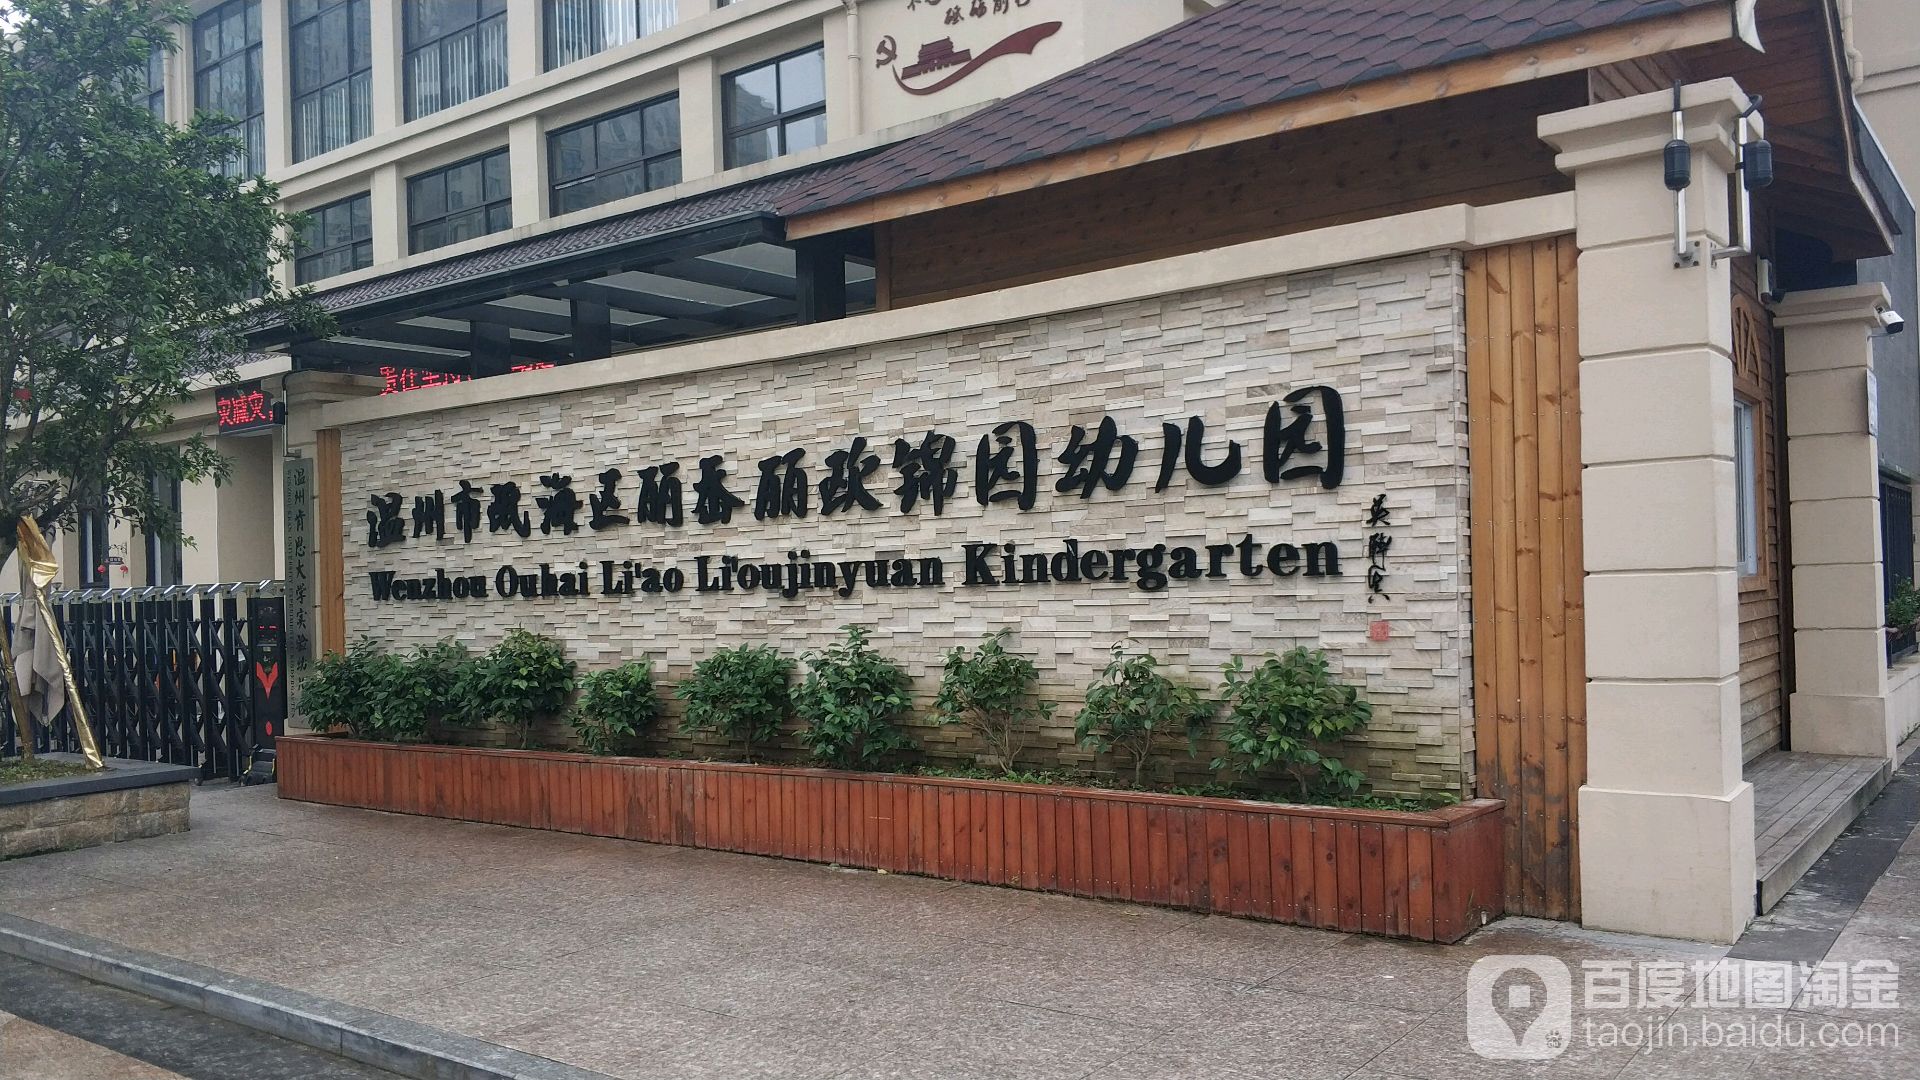 温州市瓯海区丽岙丽欧锦园幼儿园的图片